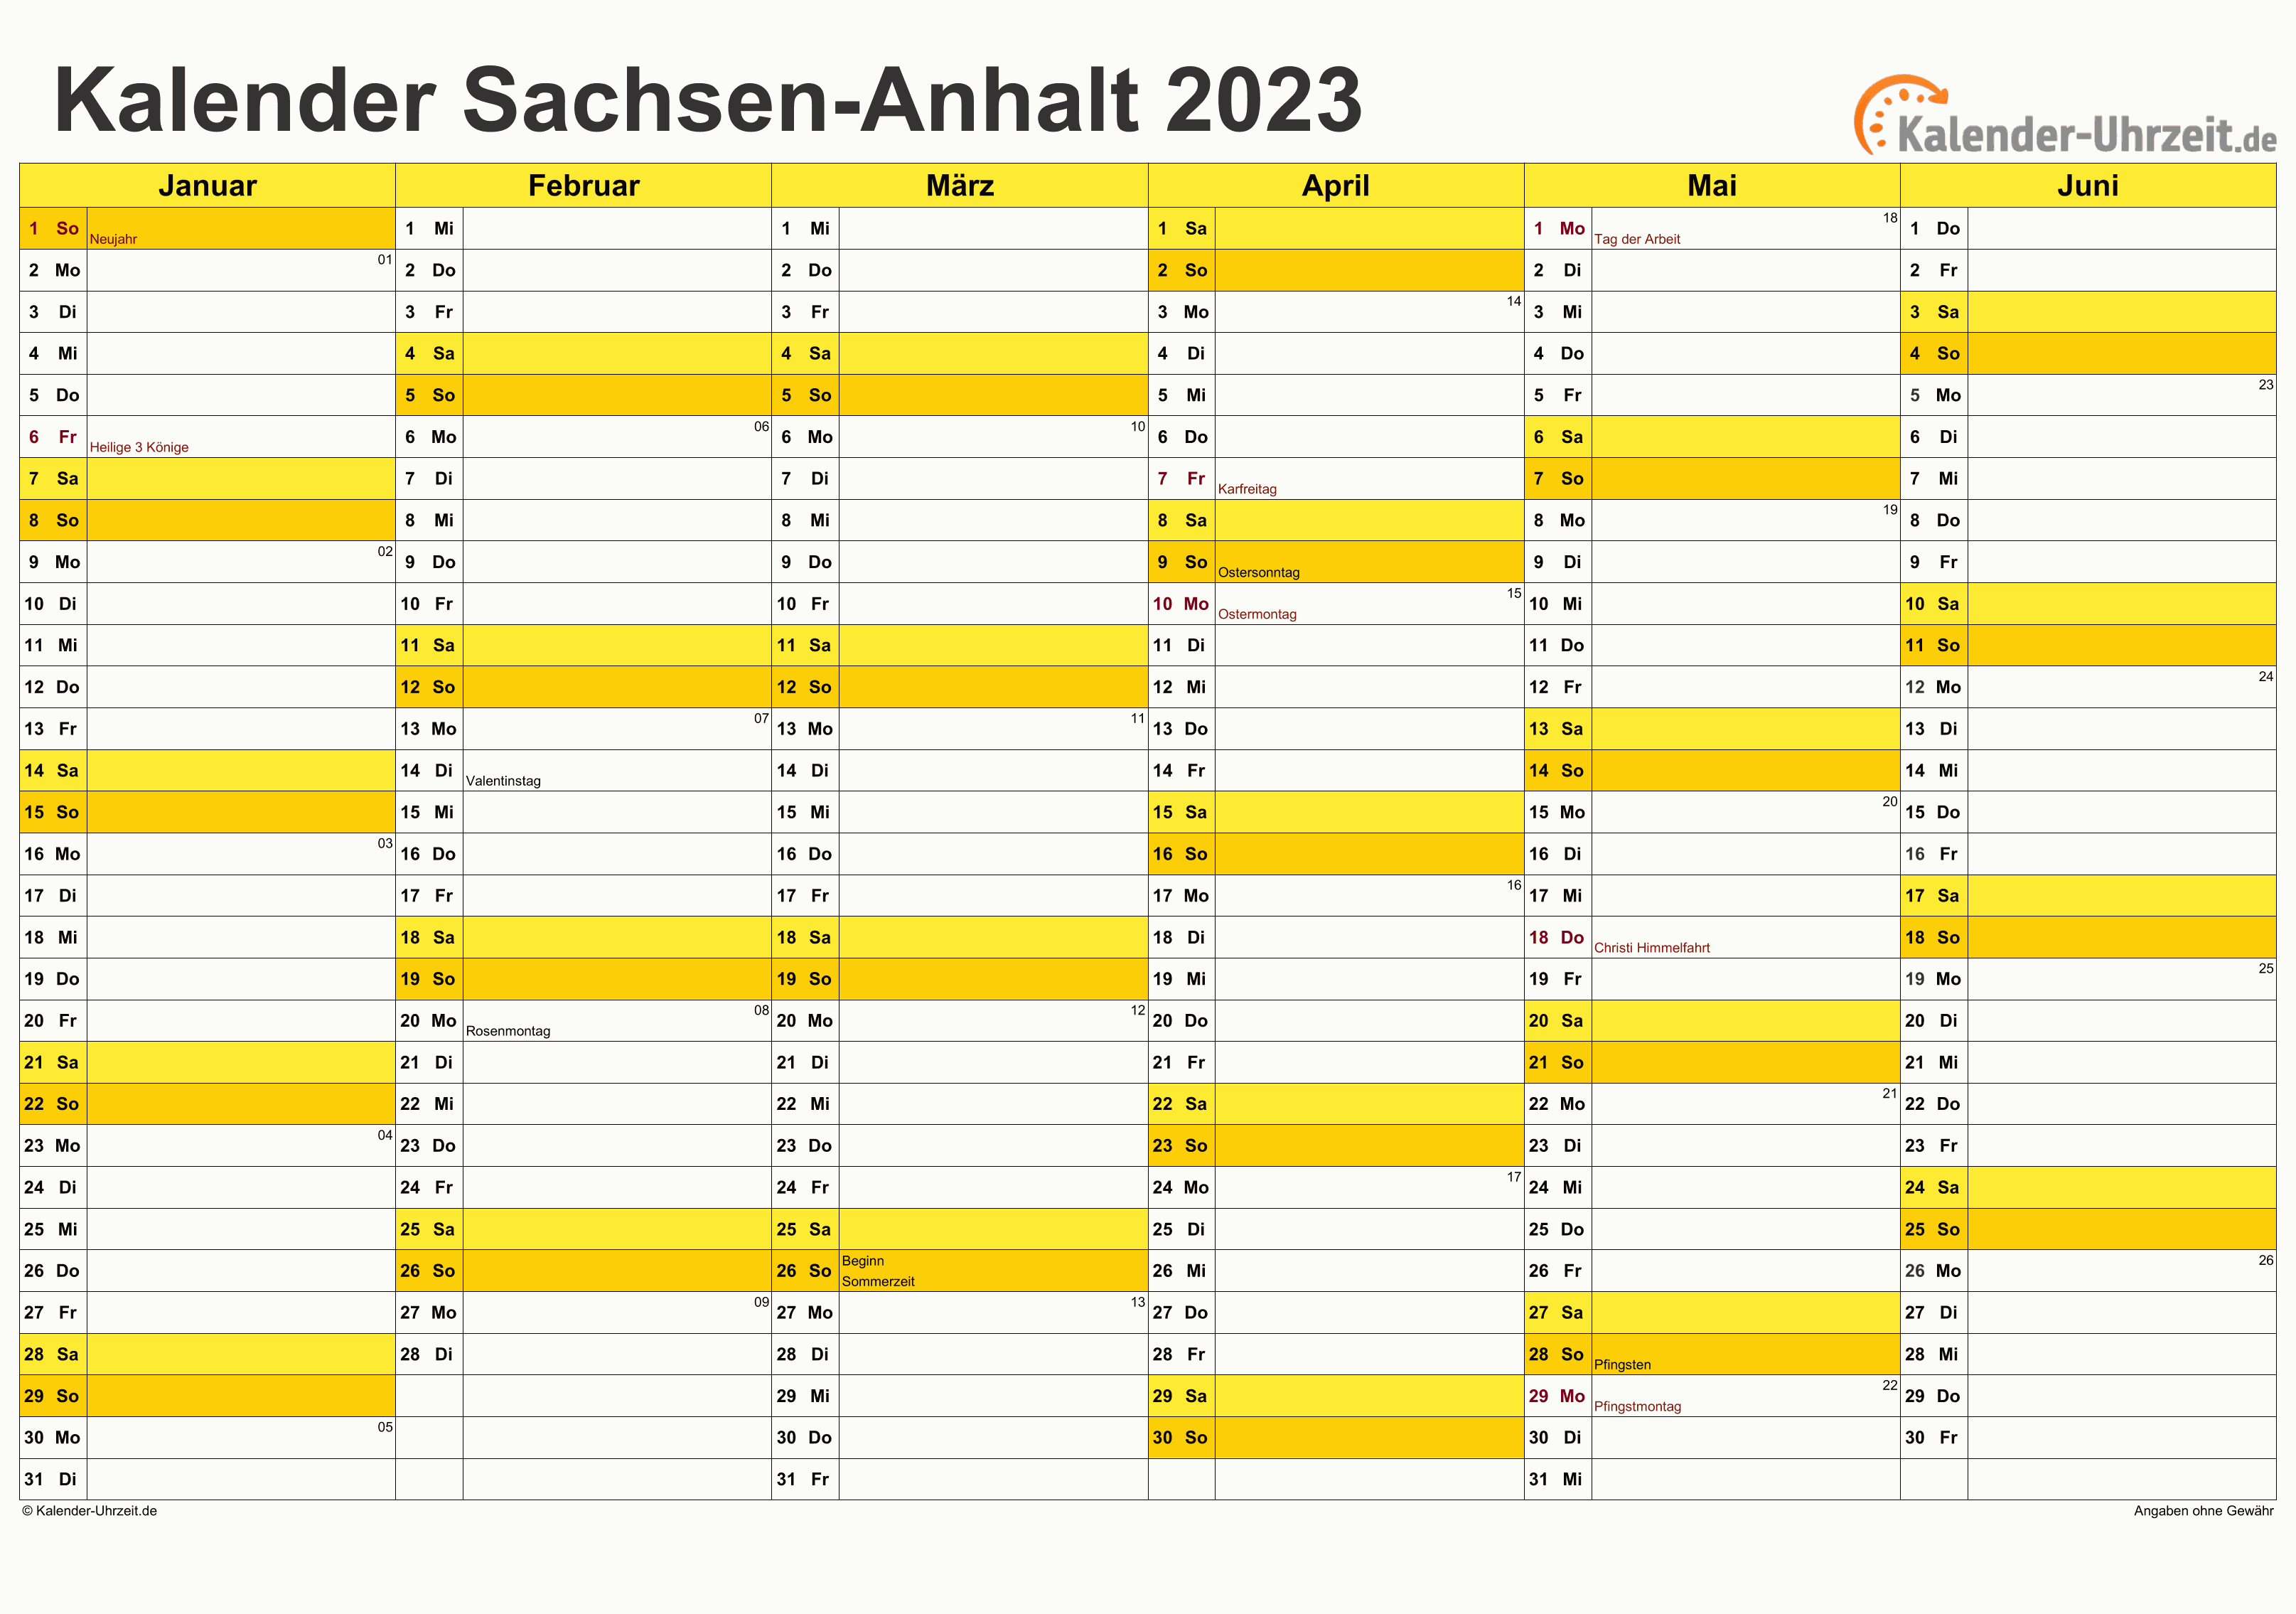 Sachsen-Anhalt Kalender 2023 mit Feiertagen - quer-zweiseitig